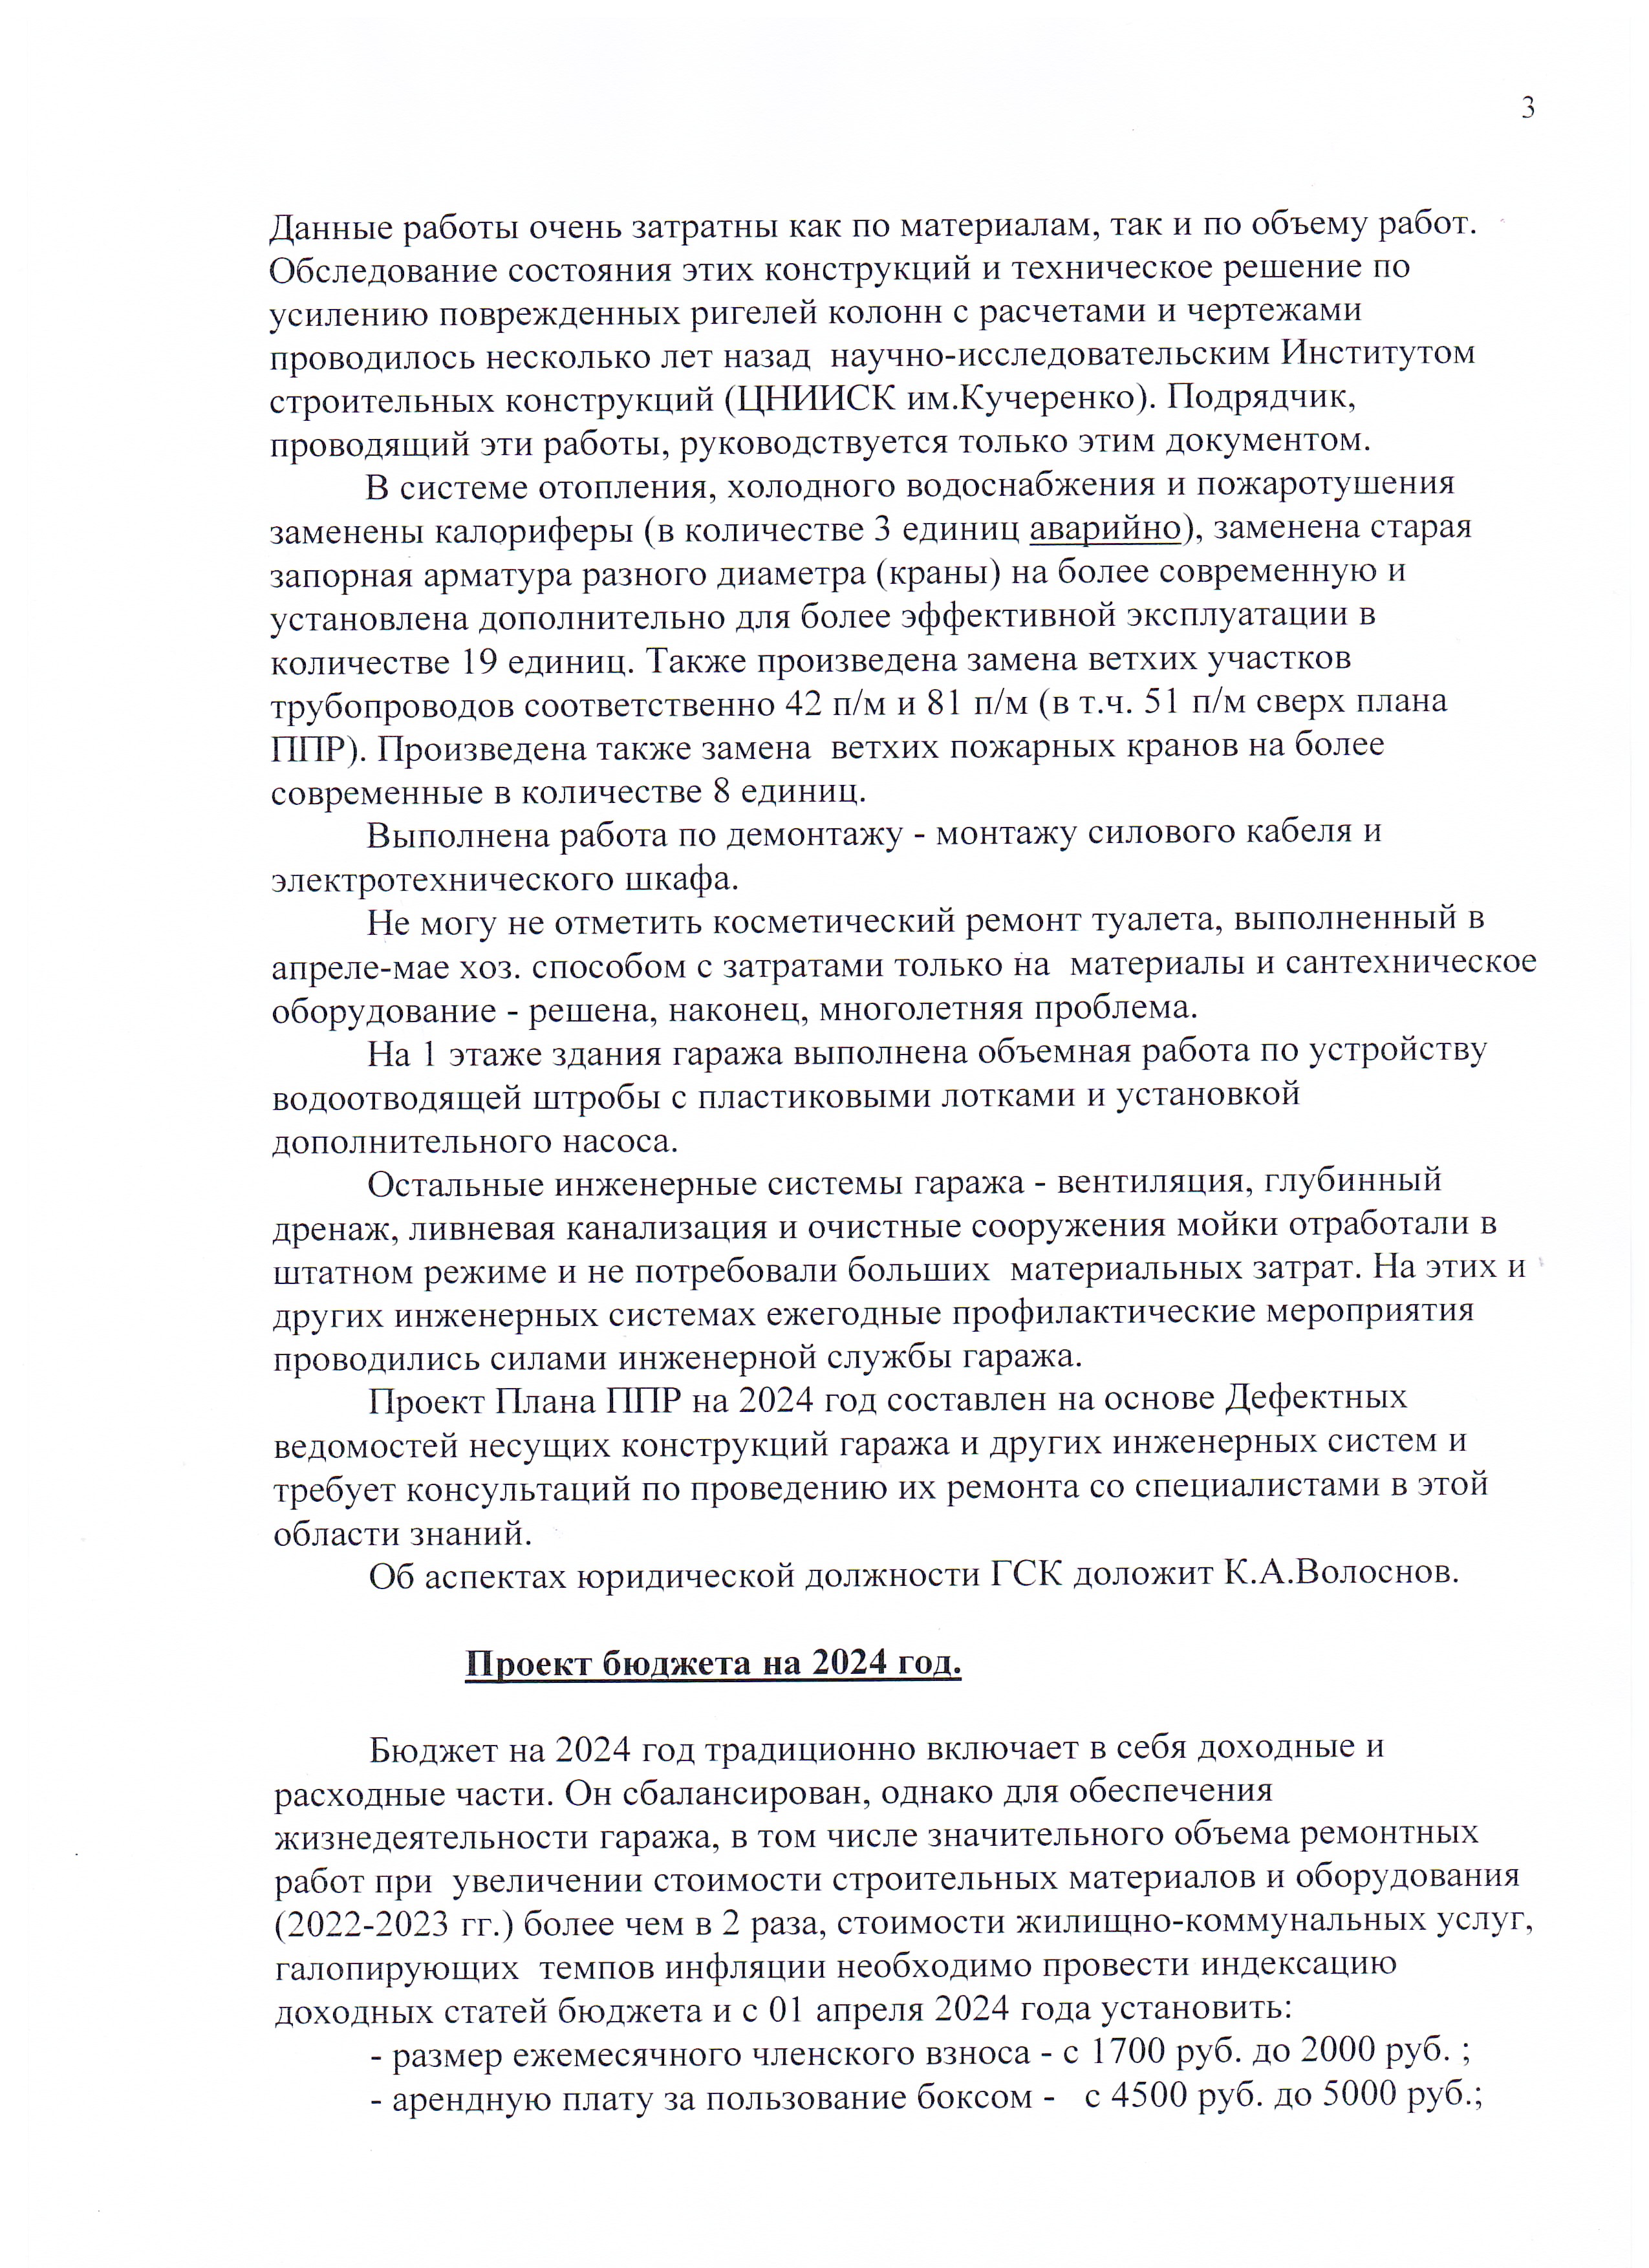 Отчет Правления ГСК «Спутник». за 2023 г.